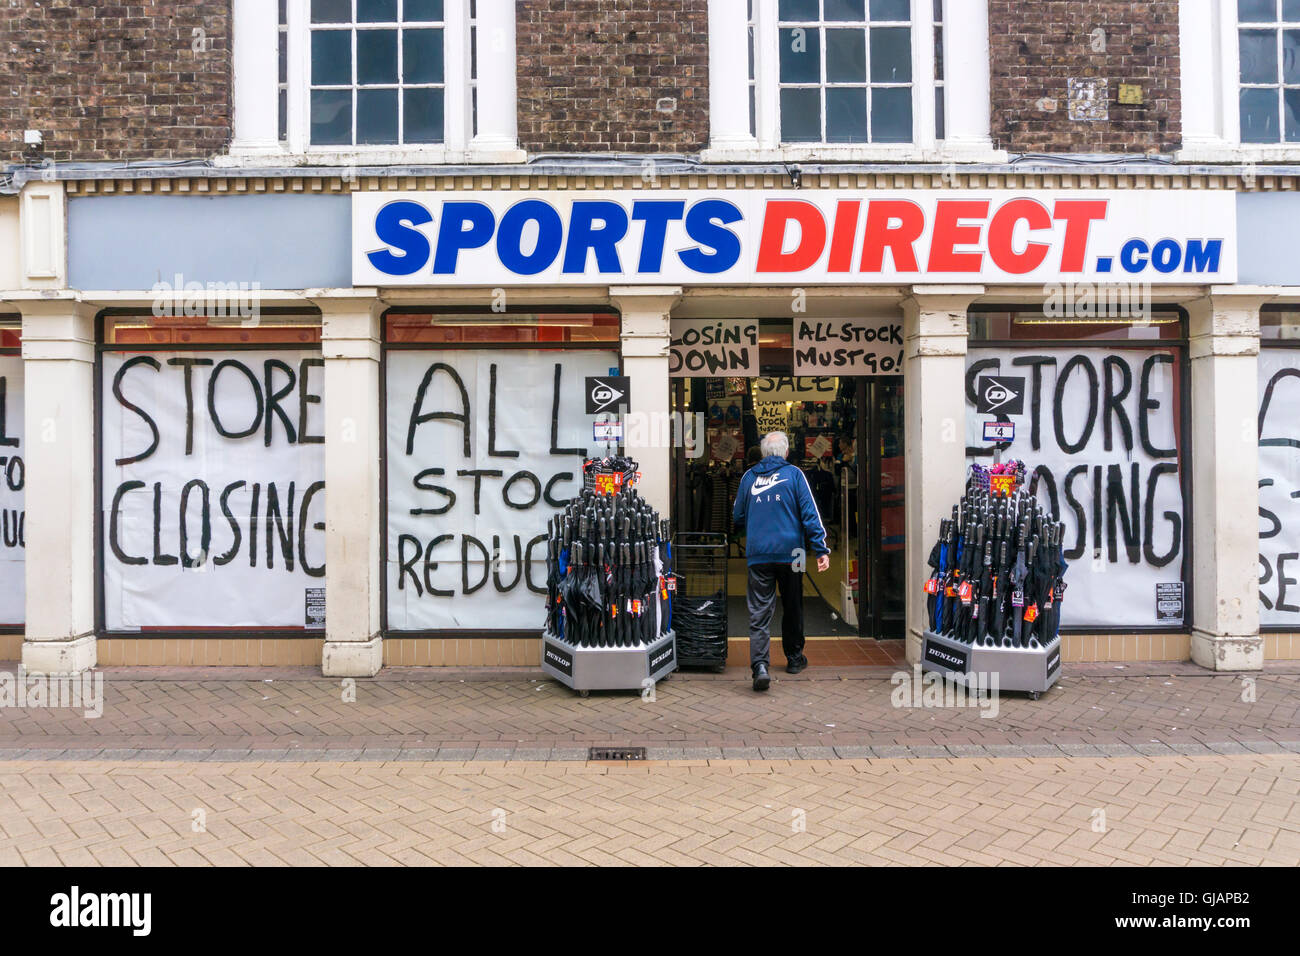 Schließen nach unten Verkauf mit Store schließen Zeichen an einem Seitenarm des Sports Direct oder sportsdirect.com Sportbekleidung Shop. Stockfoto